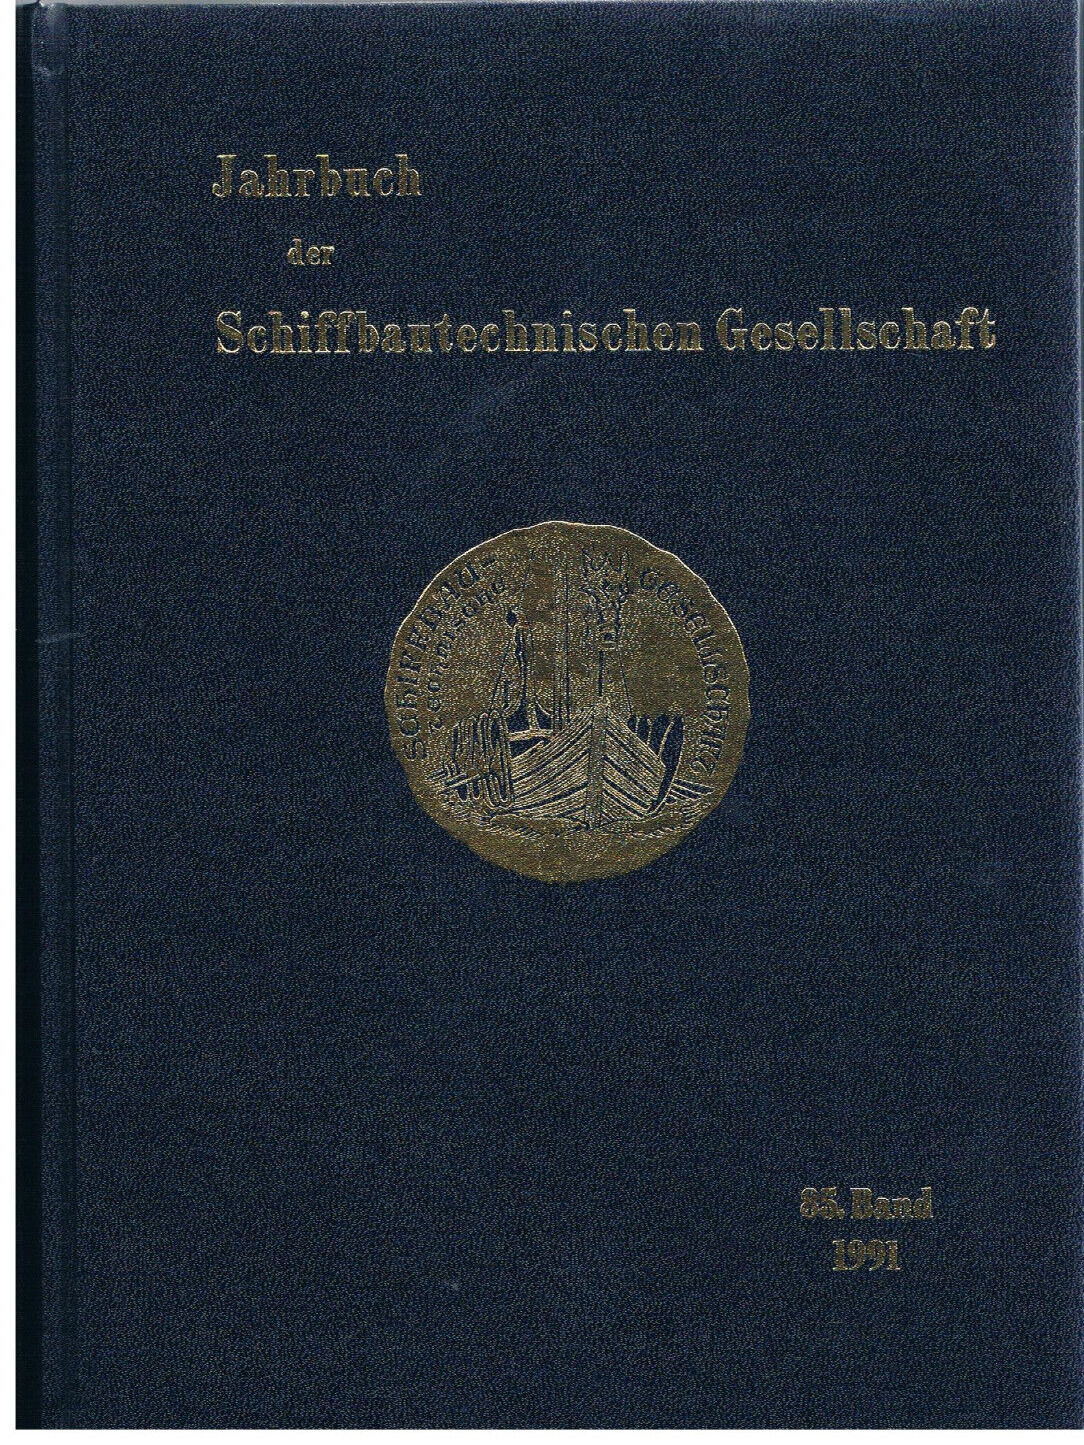 JAHRBUCH DER SCHIFFBAUTECHNISCHEN GESELLSCHAFT 85. Band 1991 - Schiffbautechnische Gesellschaft